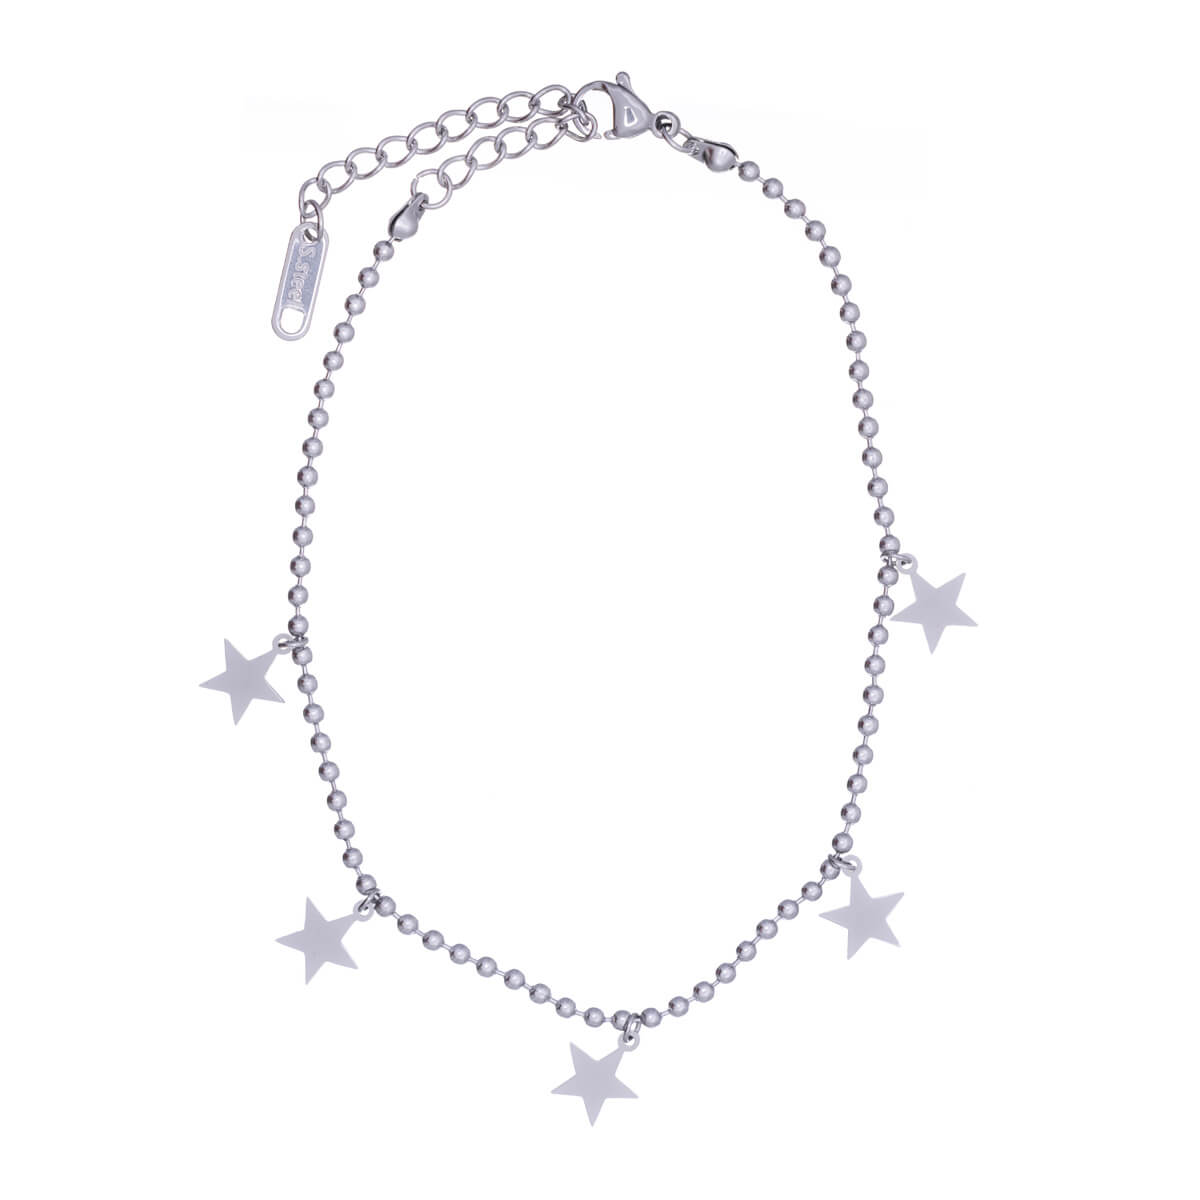 Star pendant ankle chain steel ankle bracelet (Steel 316L)